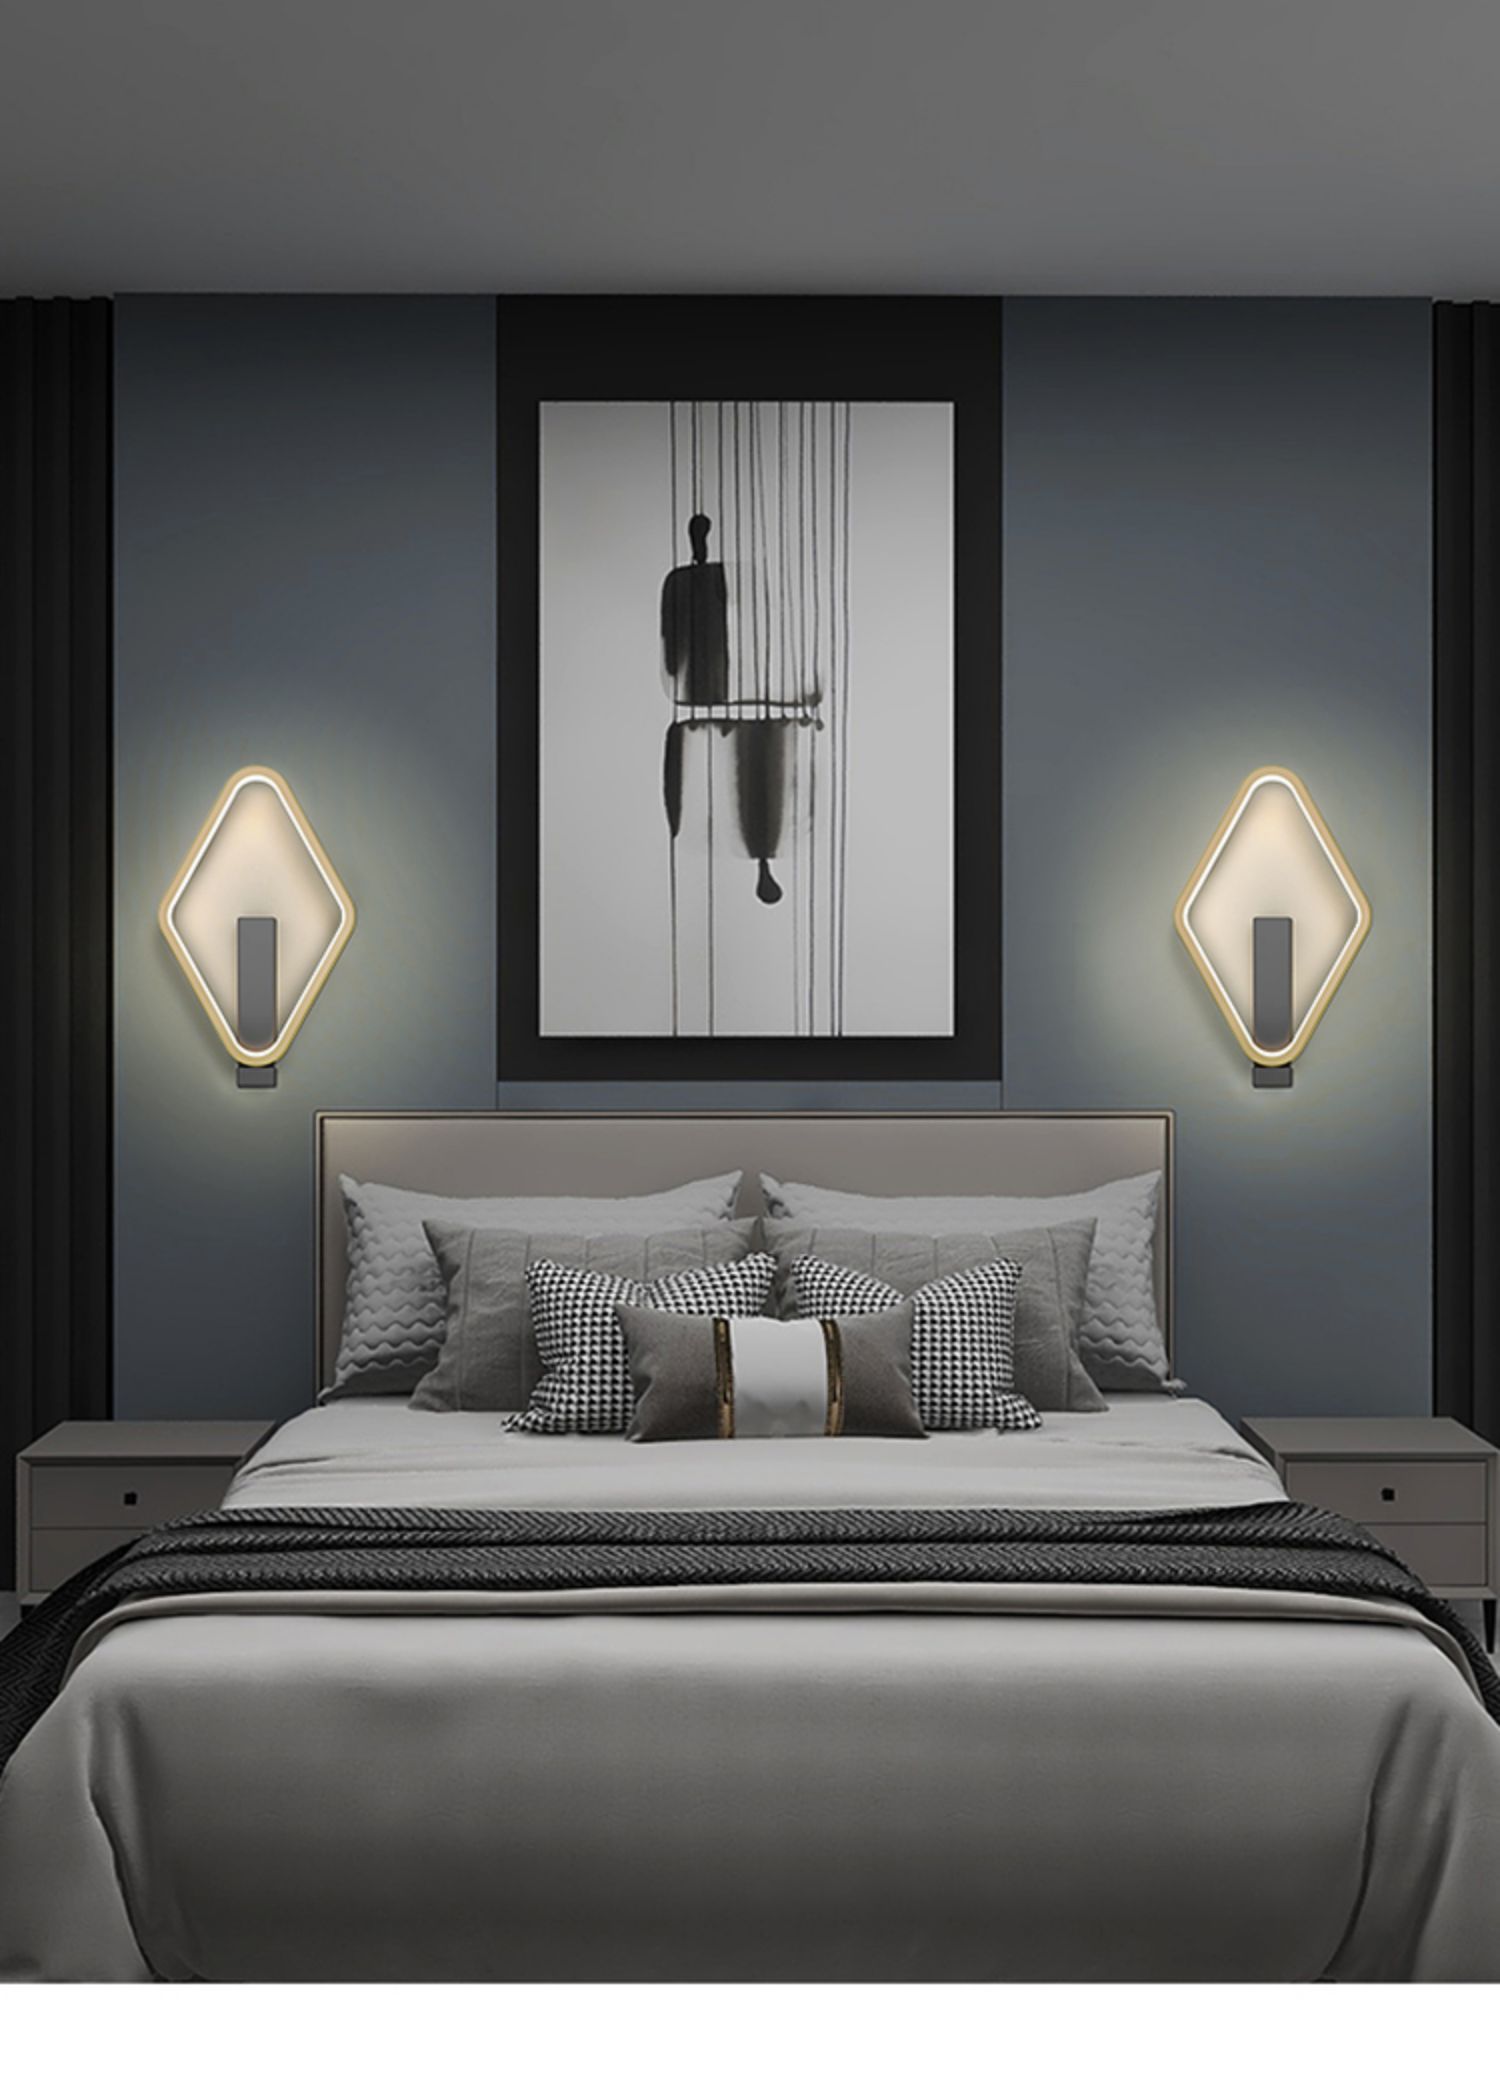 床头壁挂灯轻奢 简约现代创意个性走廊过道墙灯方形卧室床头灯北欧